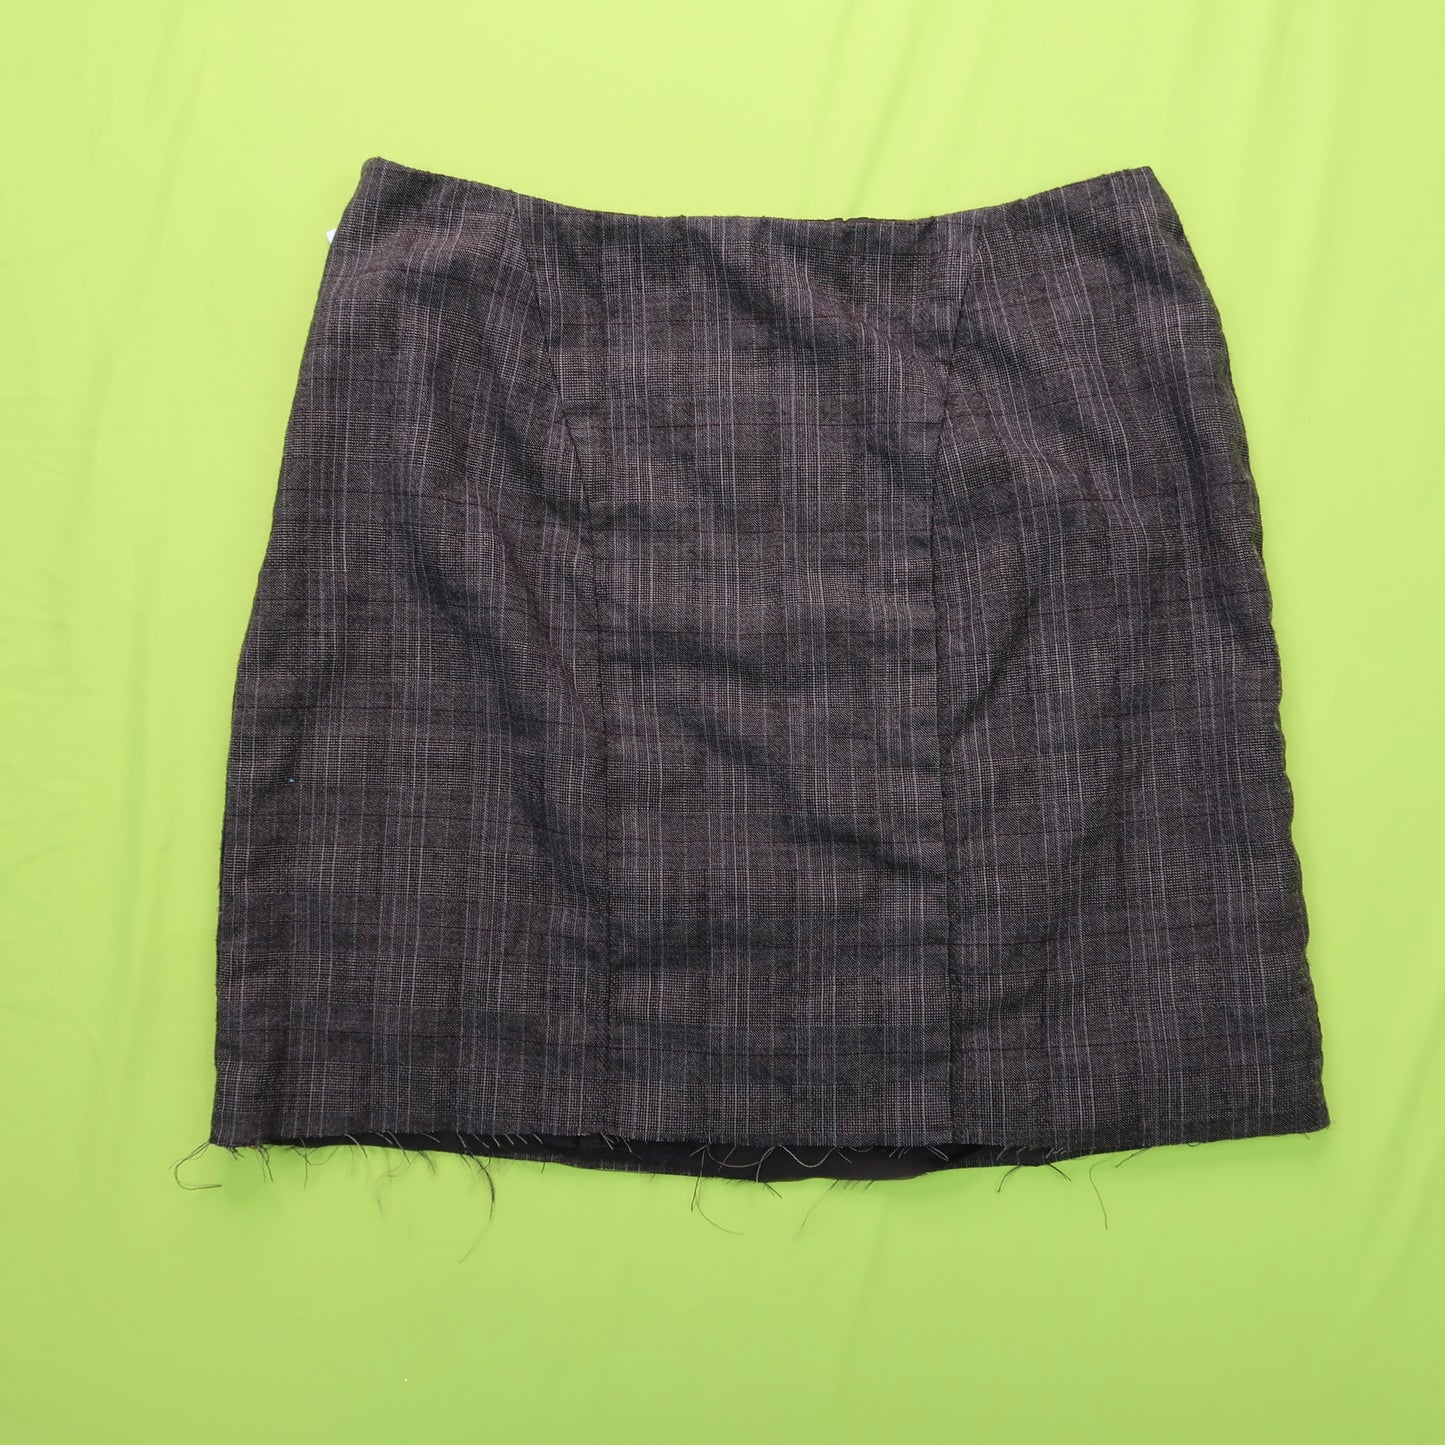 Plaid Star Patchwork Skirt - Medium